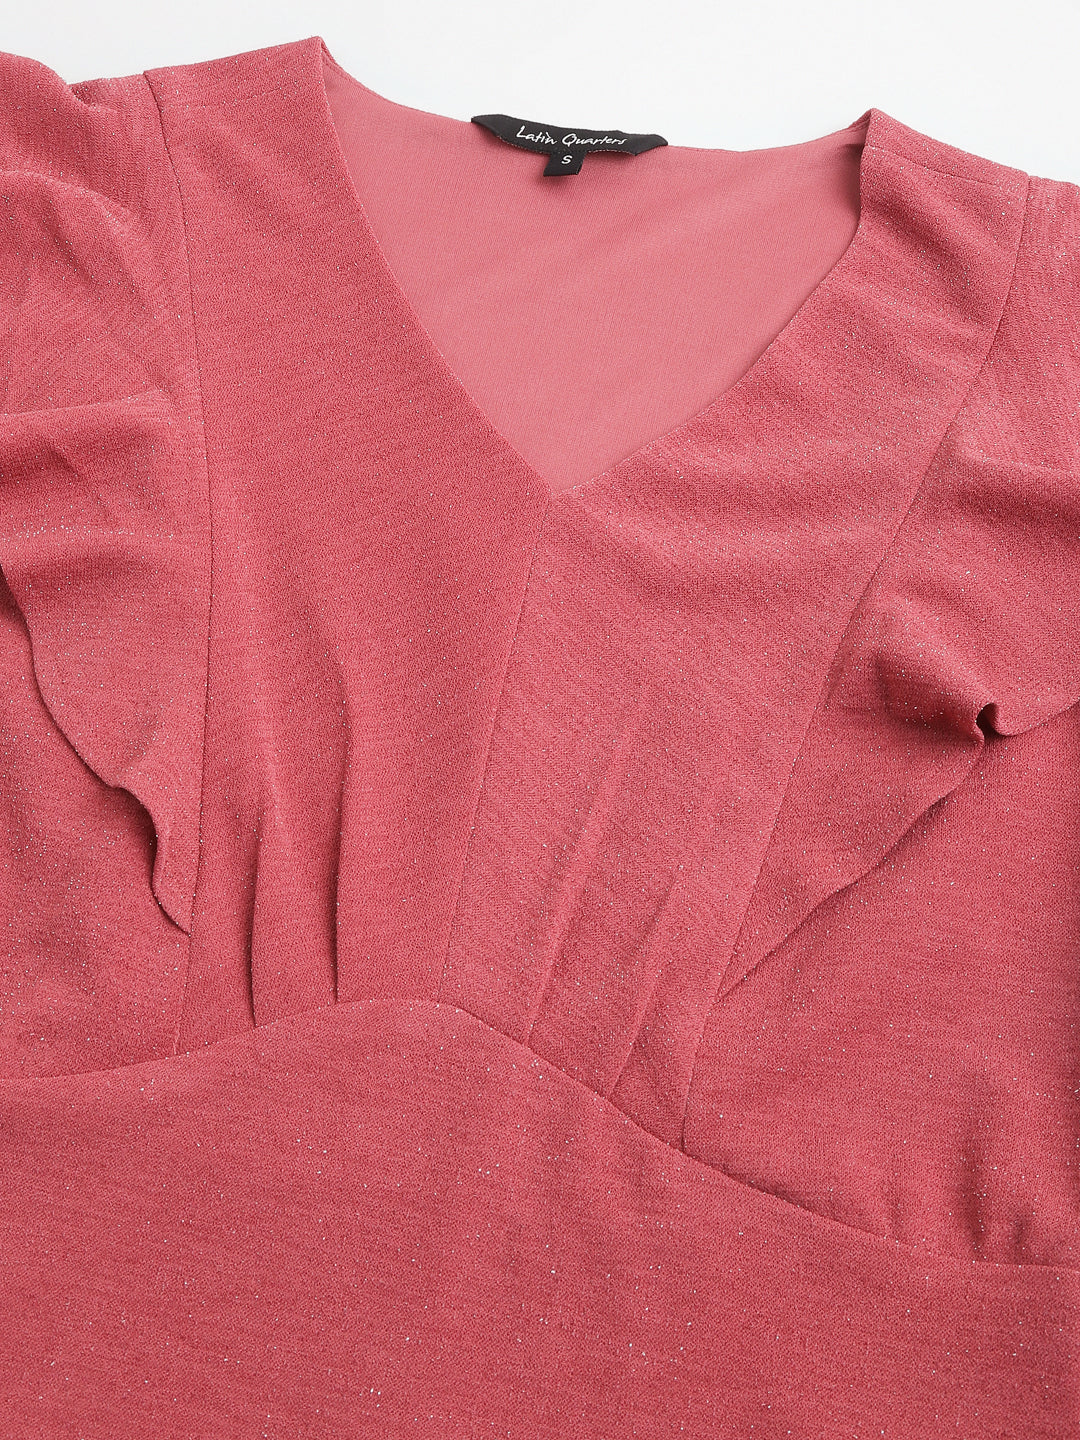 Rose Cap Sleeve V-Neck Solid Normal A-Line Dress